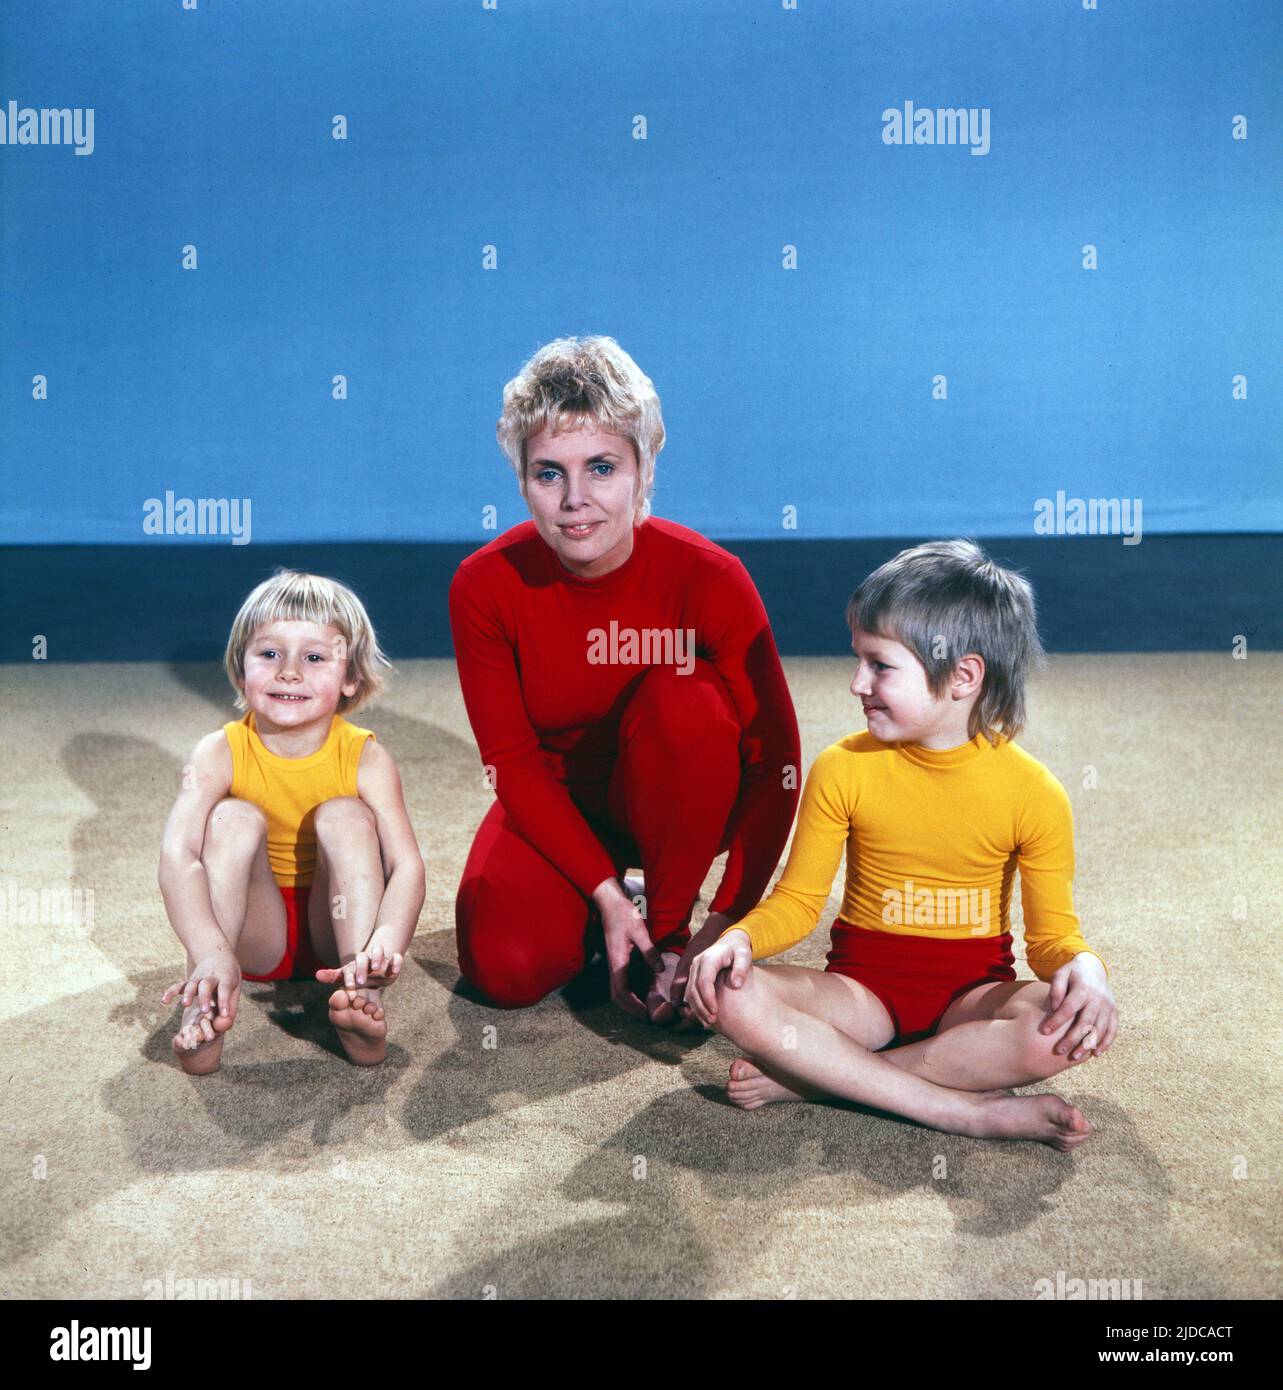 Turn mit!, Gymnastik Serie, Deutschland 1972, Vorturnerin Bärbel Vitt mit den Kindern Kathrin und Jan-Christoph Stock Photo